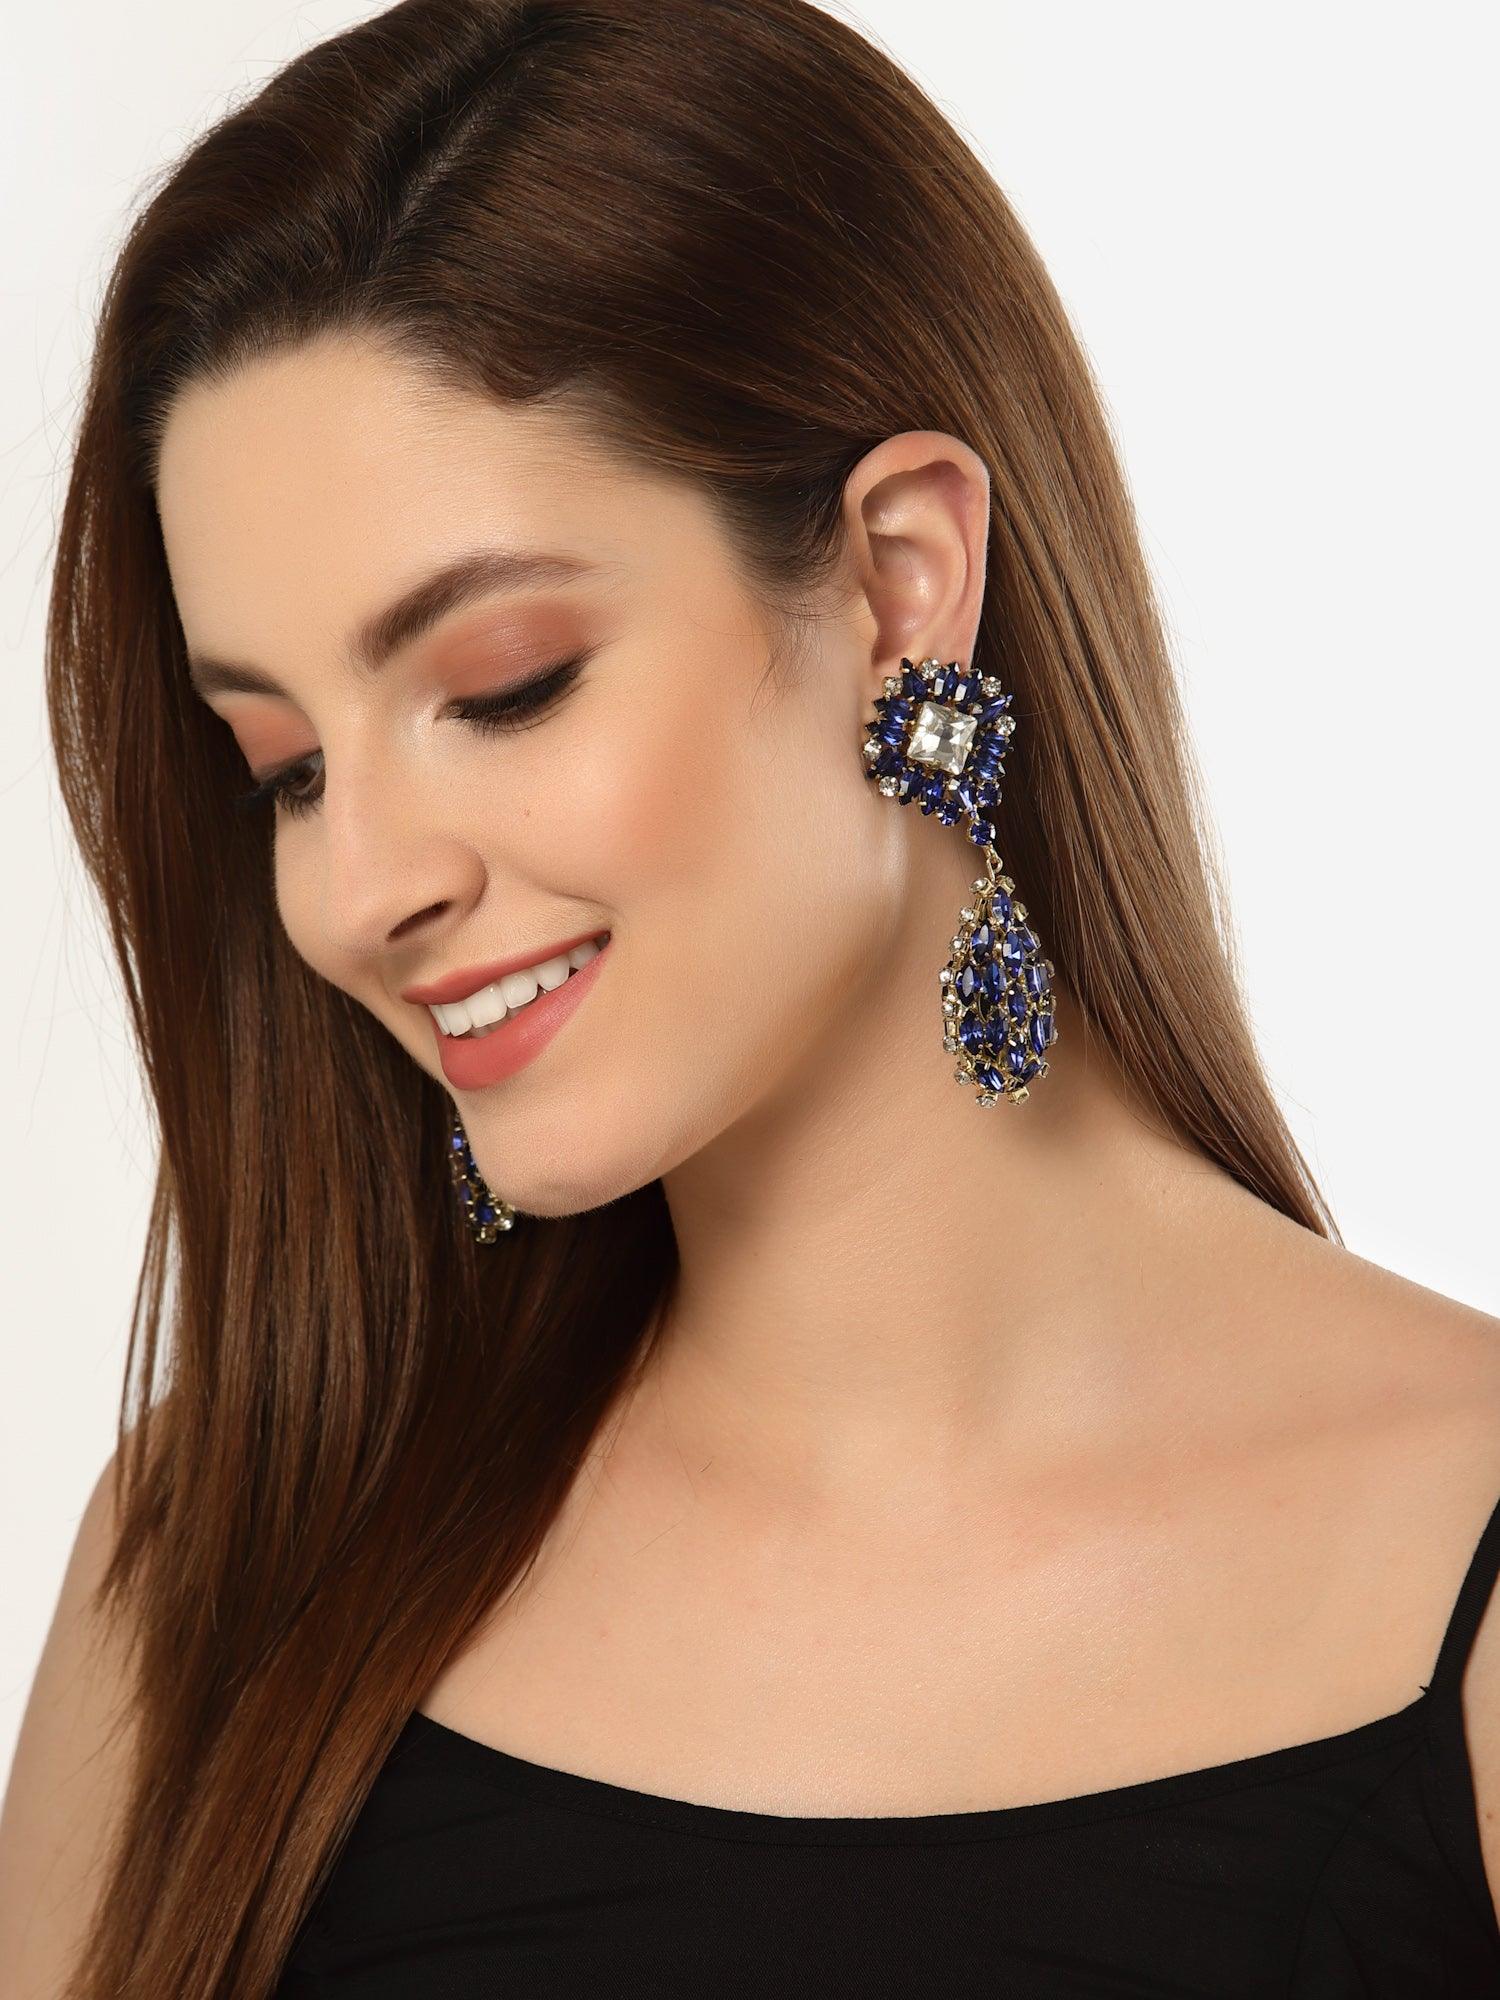 Blue Crystal Earrings - Bijoux by Priya